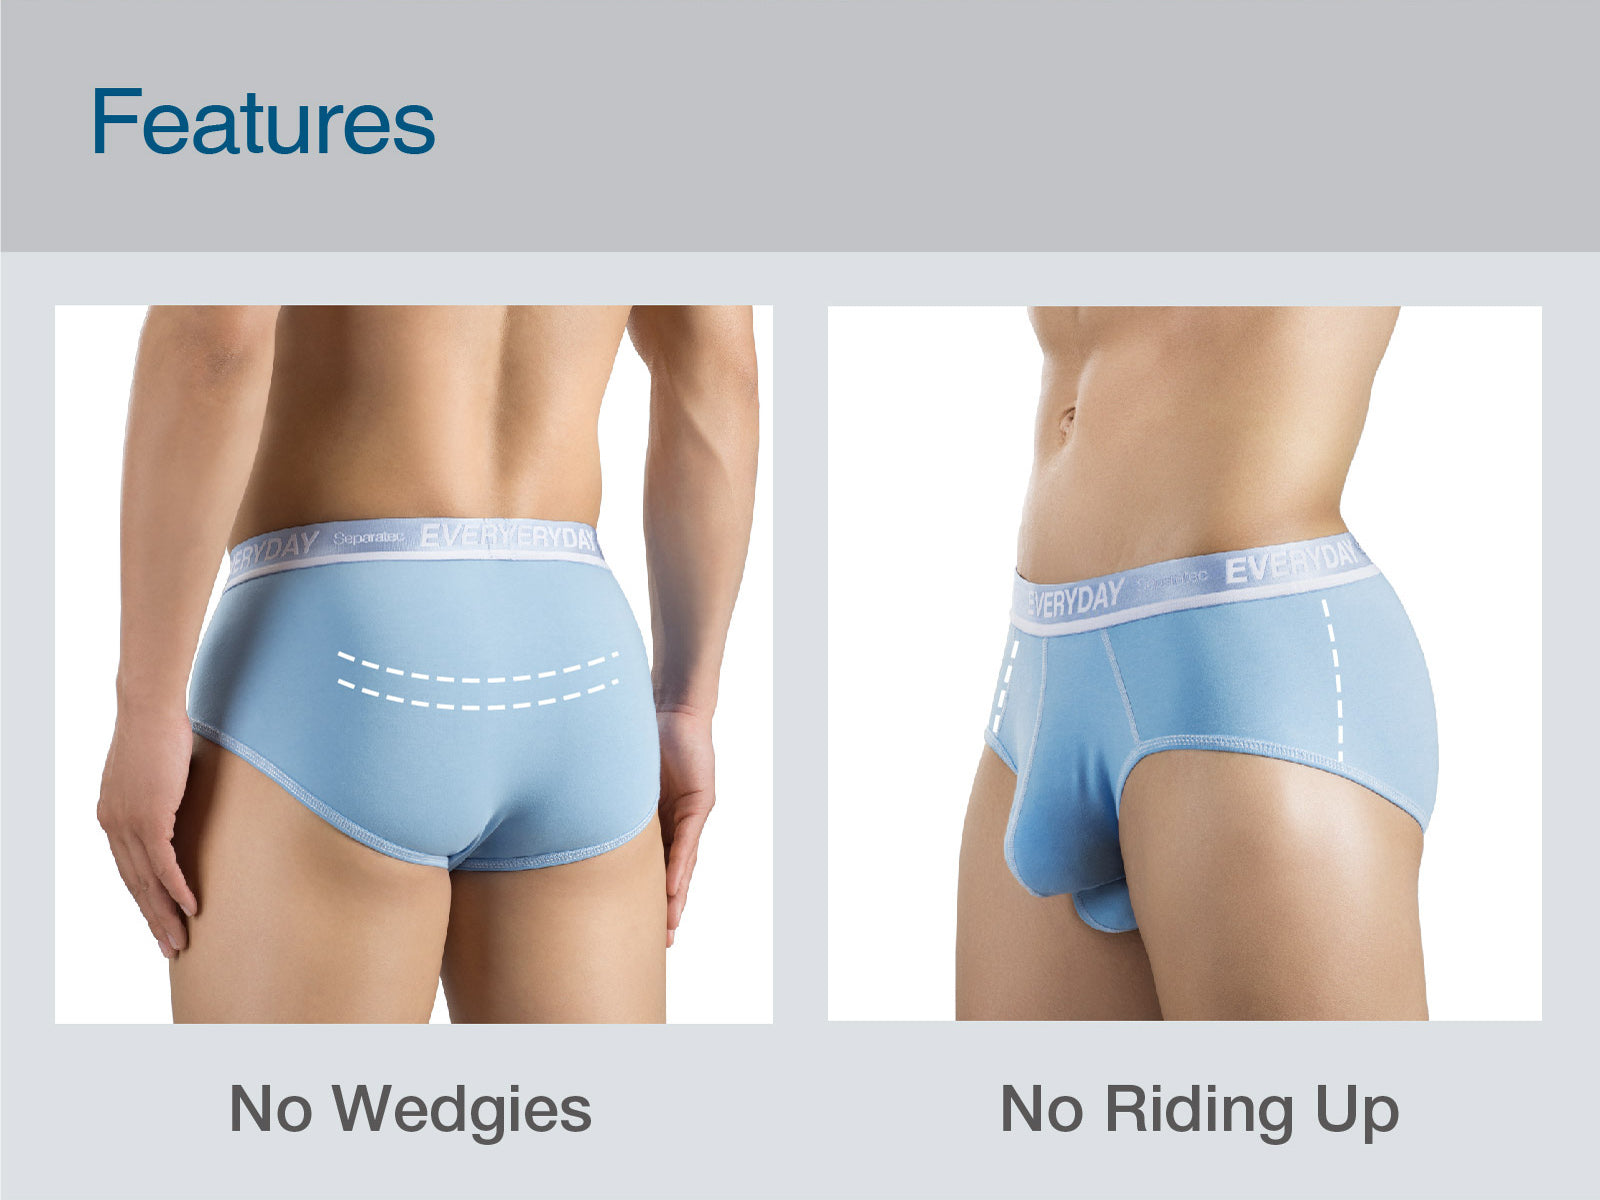 separatec underwear's features